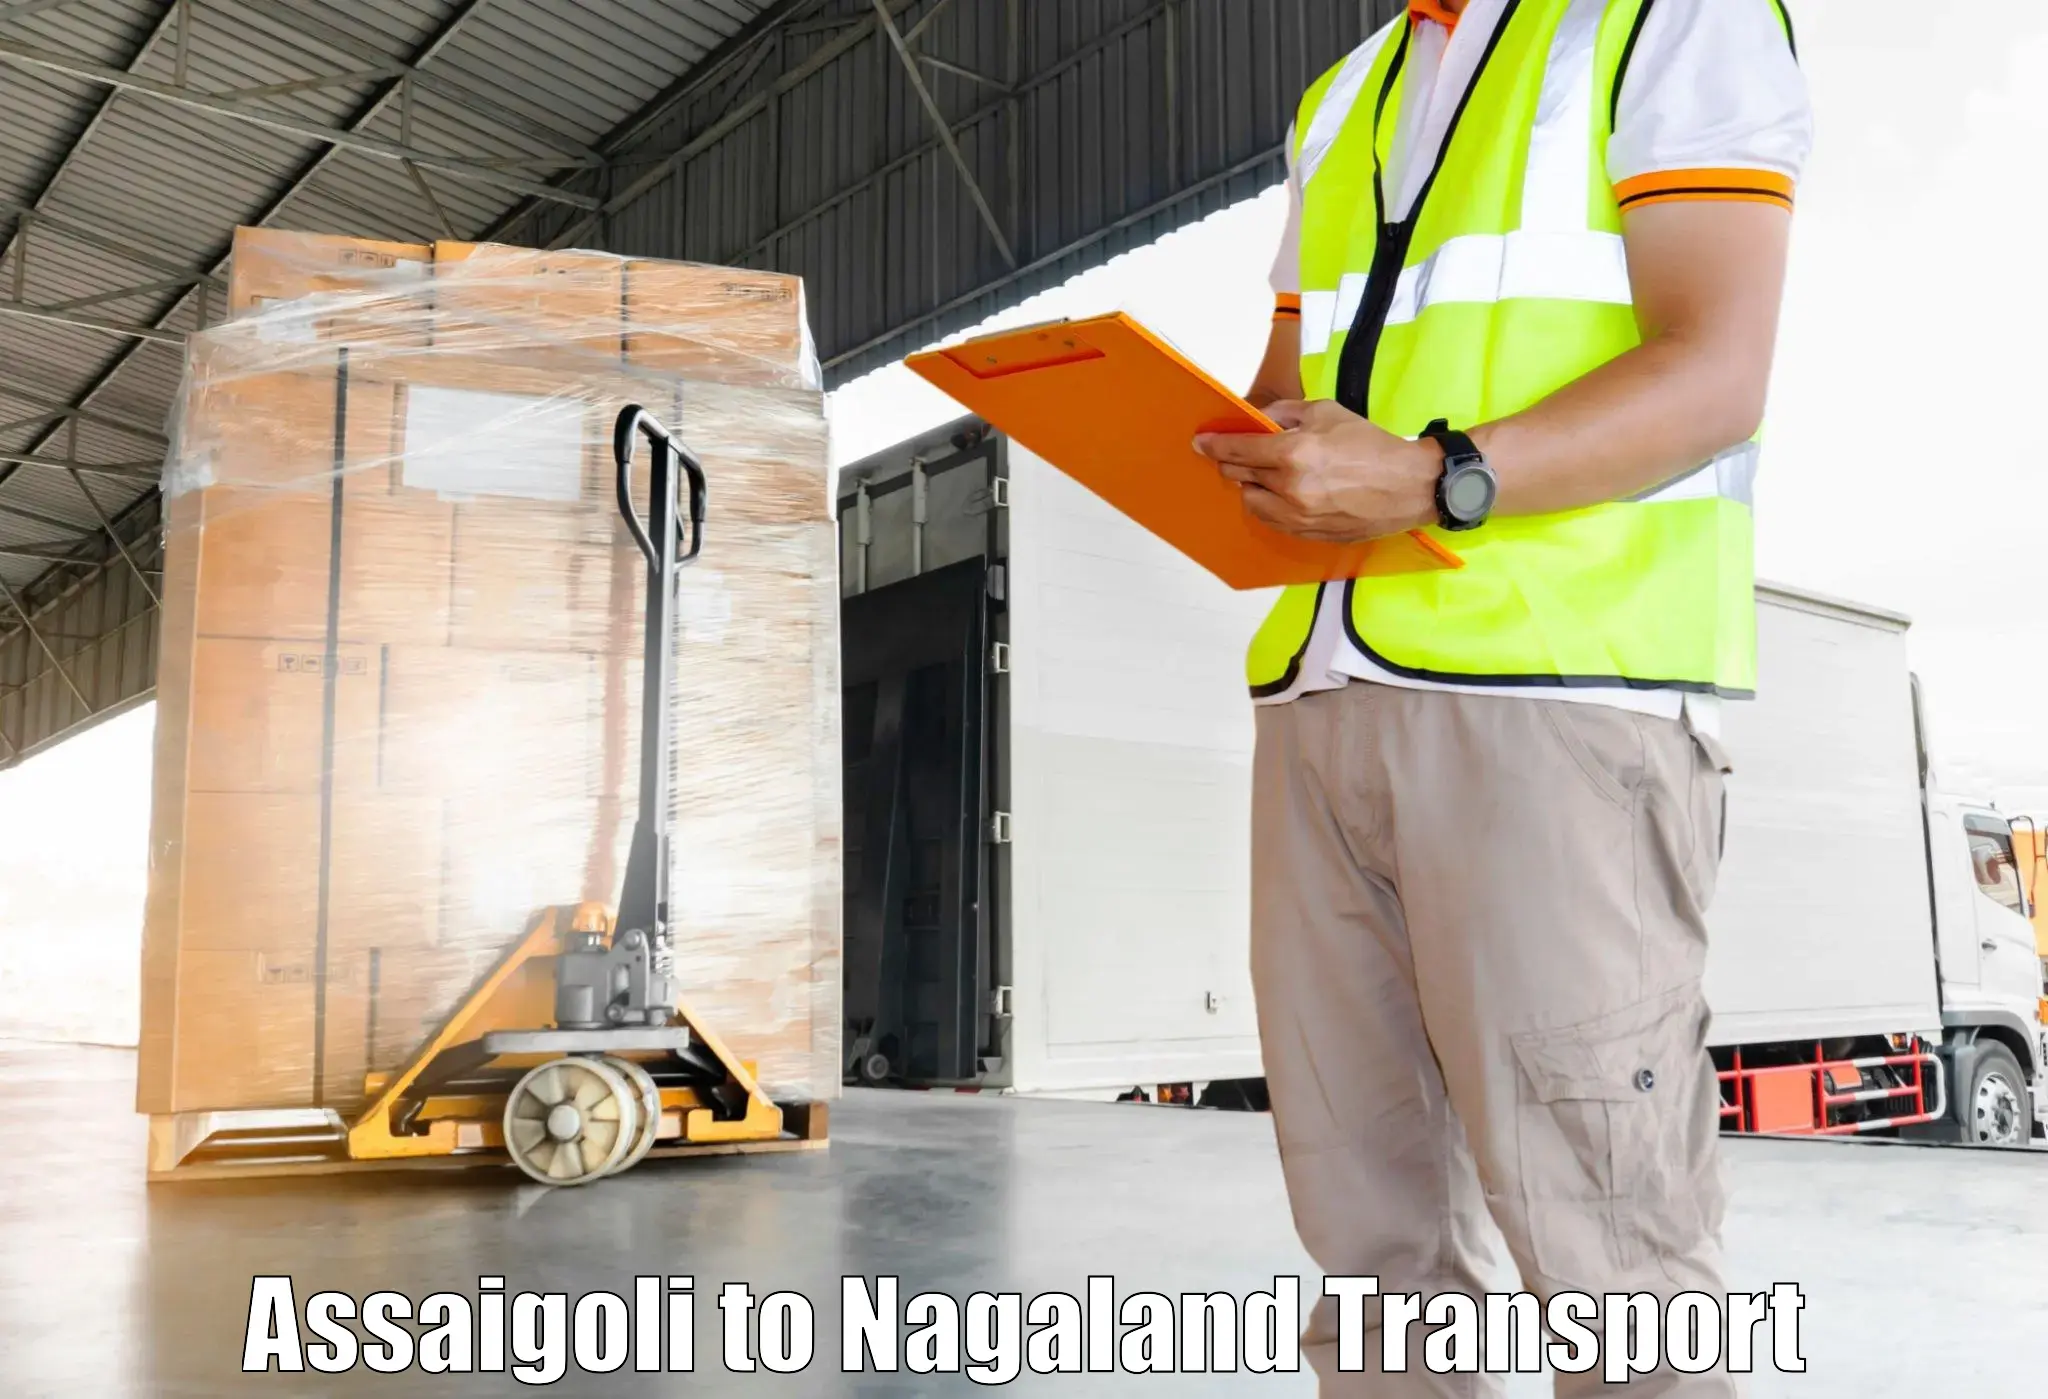 Daily transport service Assaigoli to Tuensang